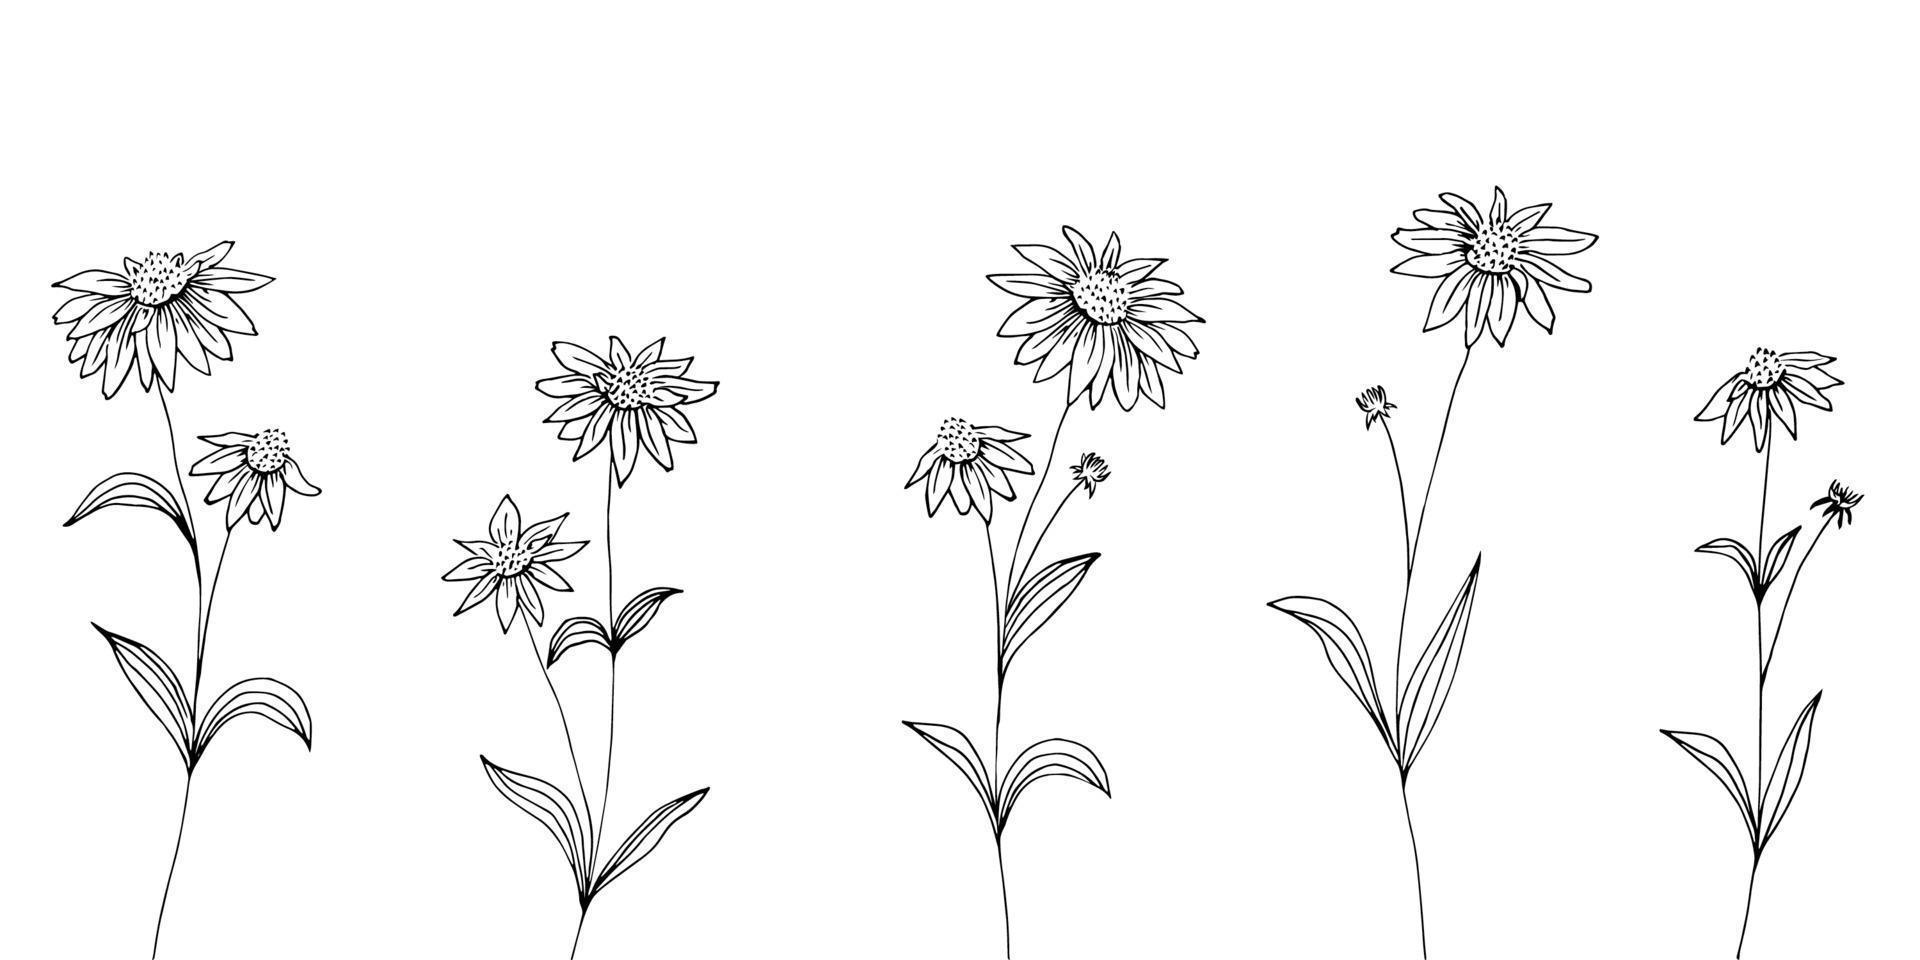 handgezeichneter Satz von Echinacea-Blumen. Blüten und Blätter. Heilpflanze, Kräutertee Zutat. vektor